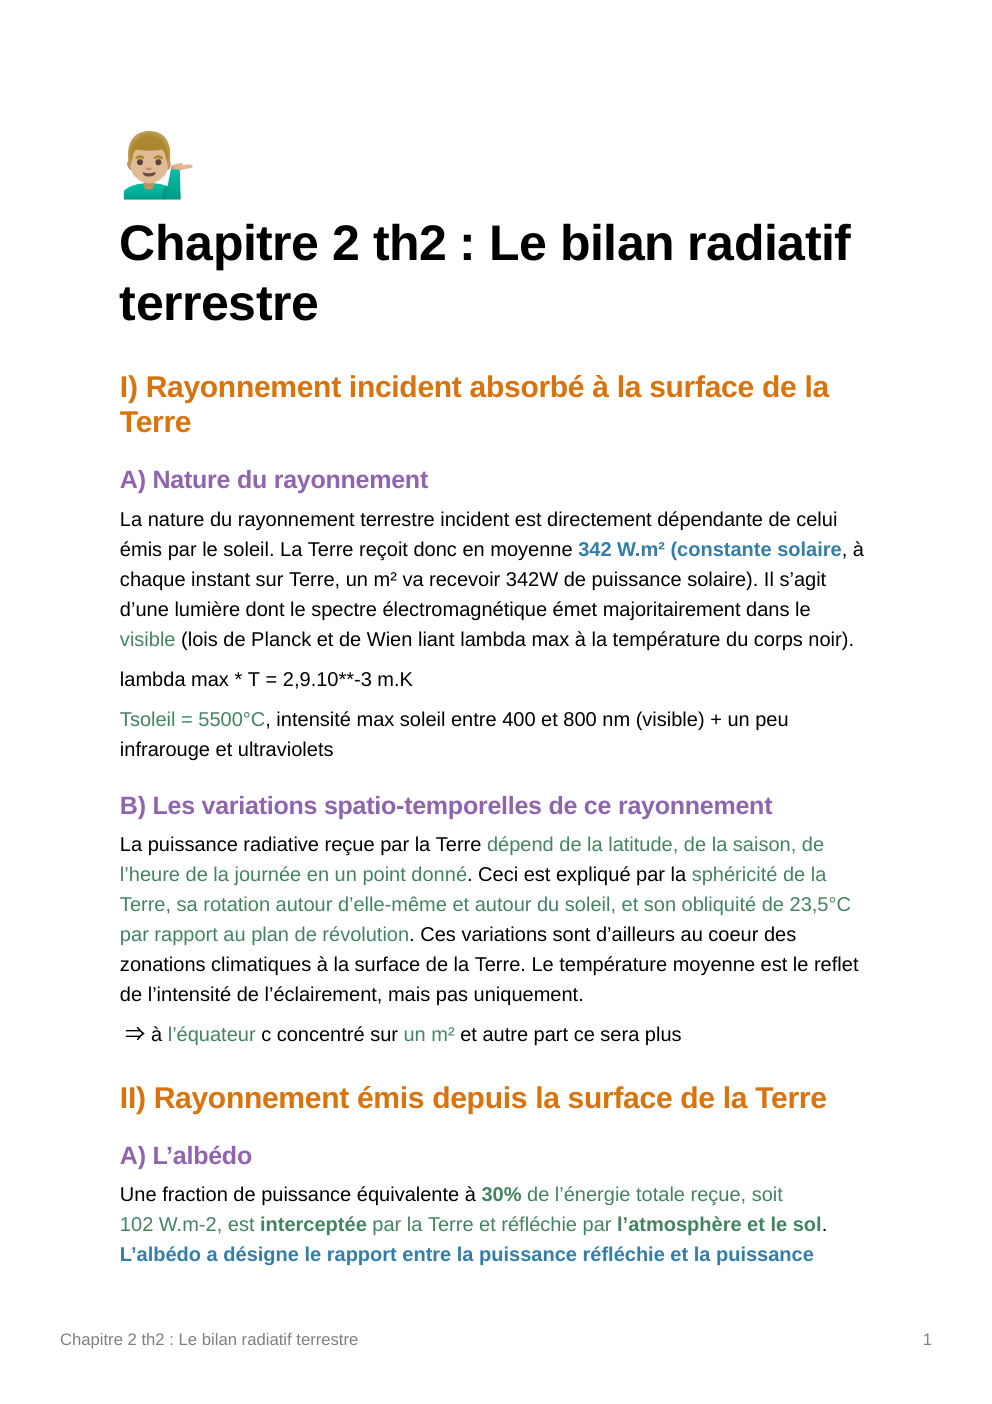 Prévisualisation du document Cours SVT 1ere chapitre 2 thème 2: Chapitre 2 th2 : Le bilan radiatif terrestre